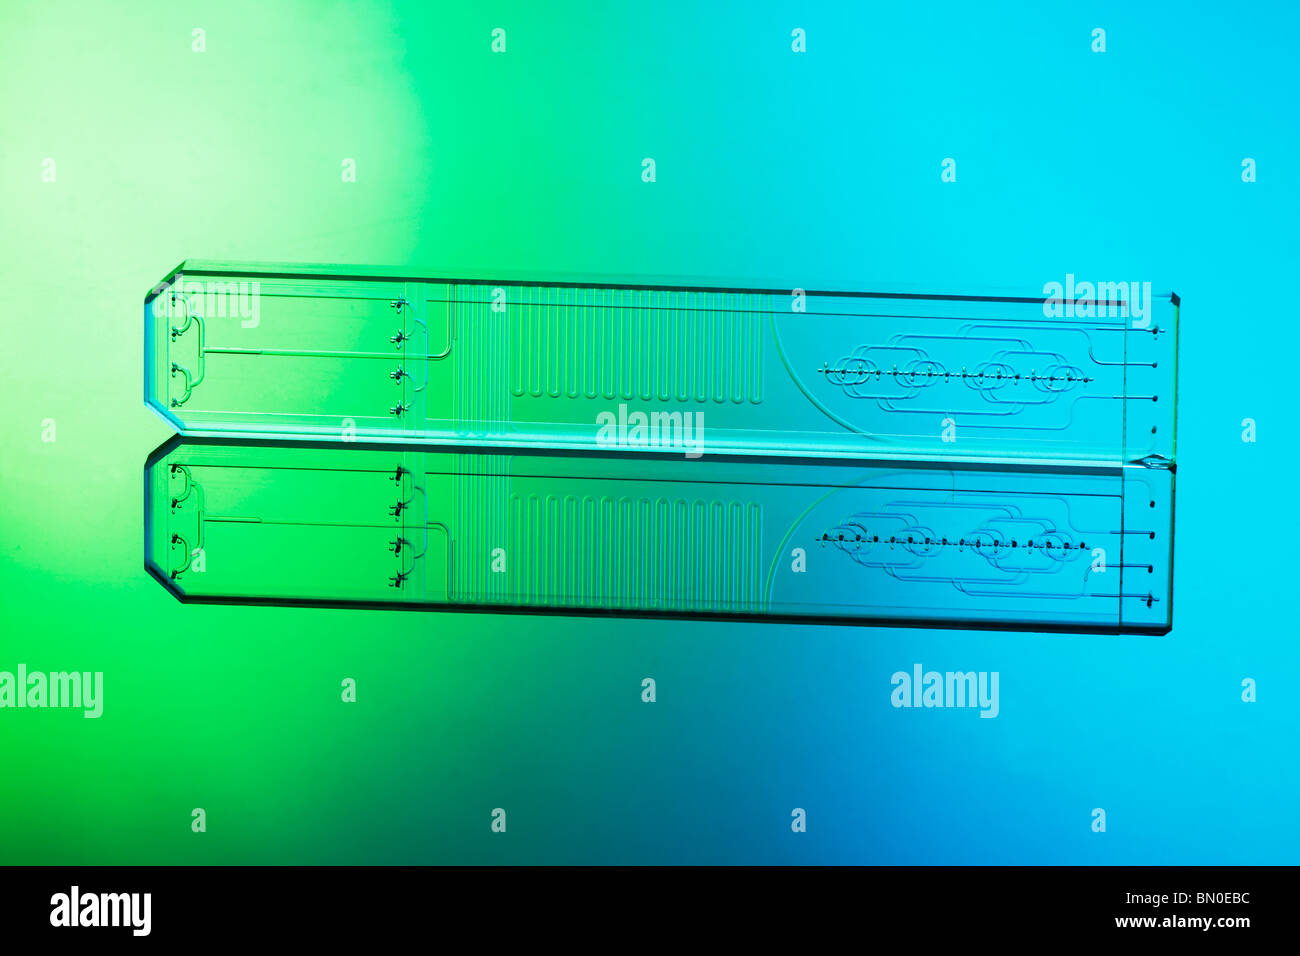 Verre gravé puce microfluidique microréacteur mélange plusieurs flux de liquide de liquides dans les applications de la technologie de micro et nano Banque D'Images